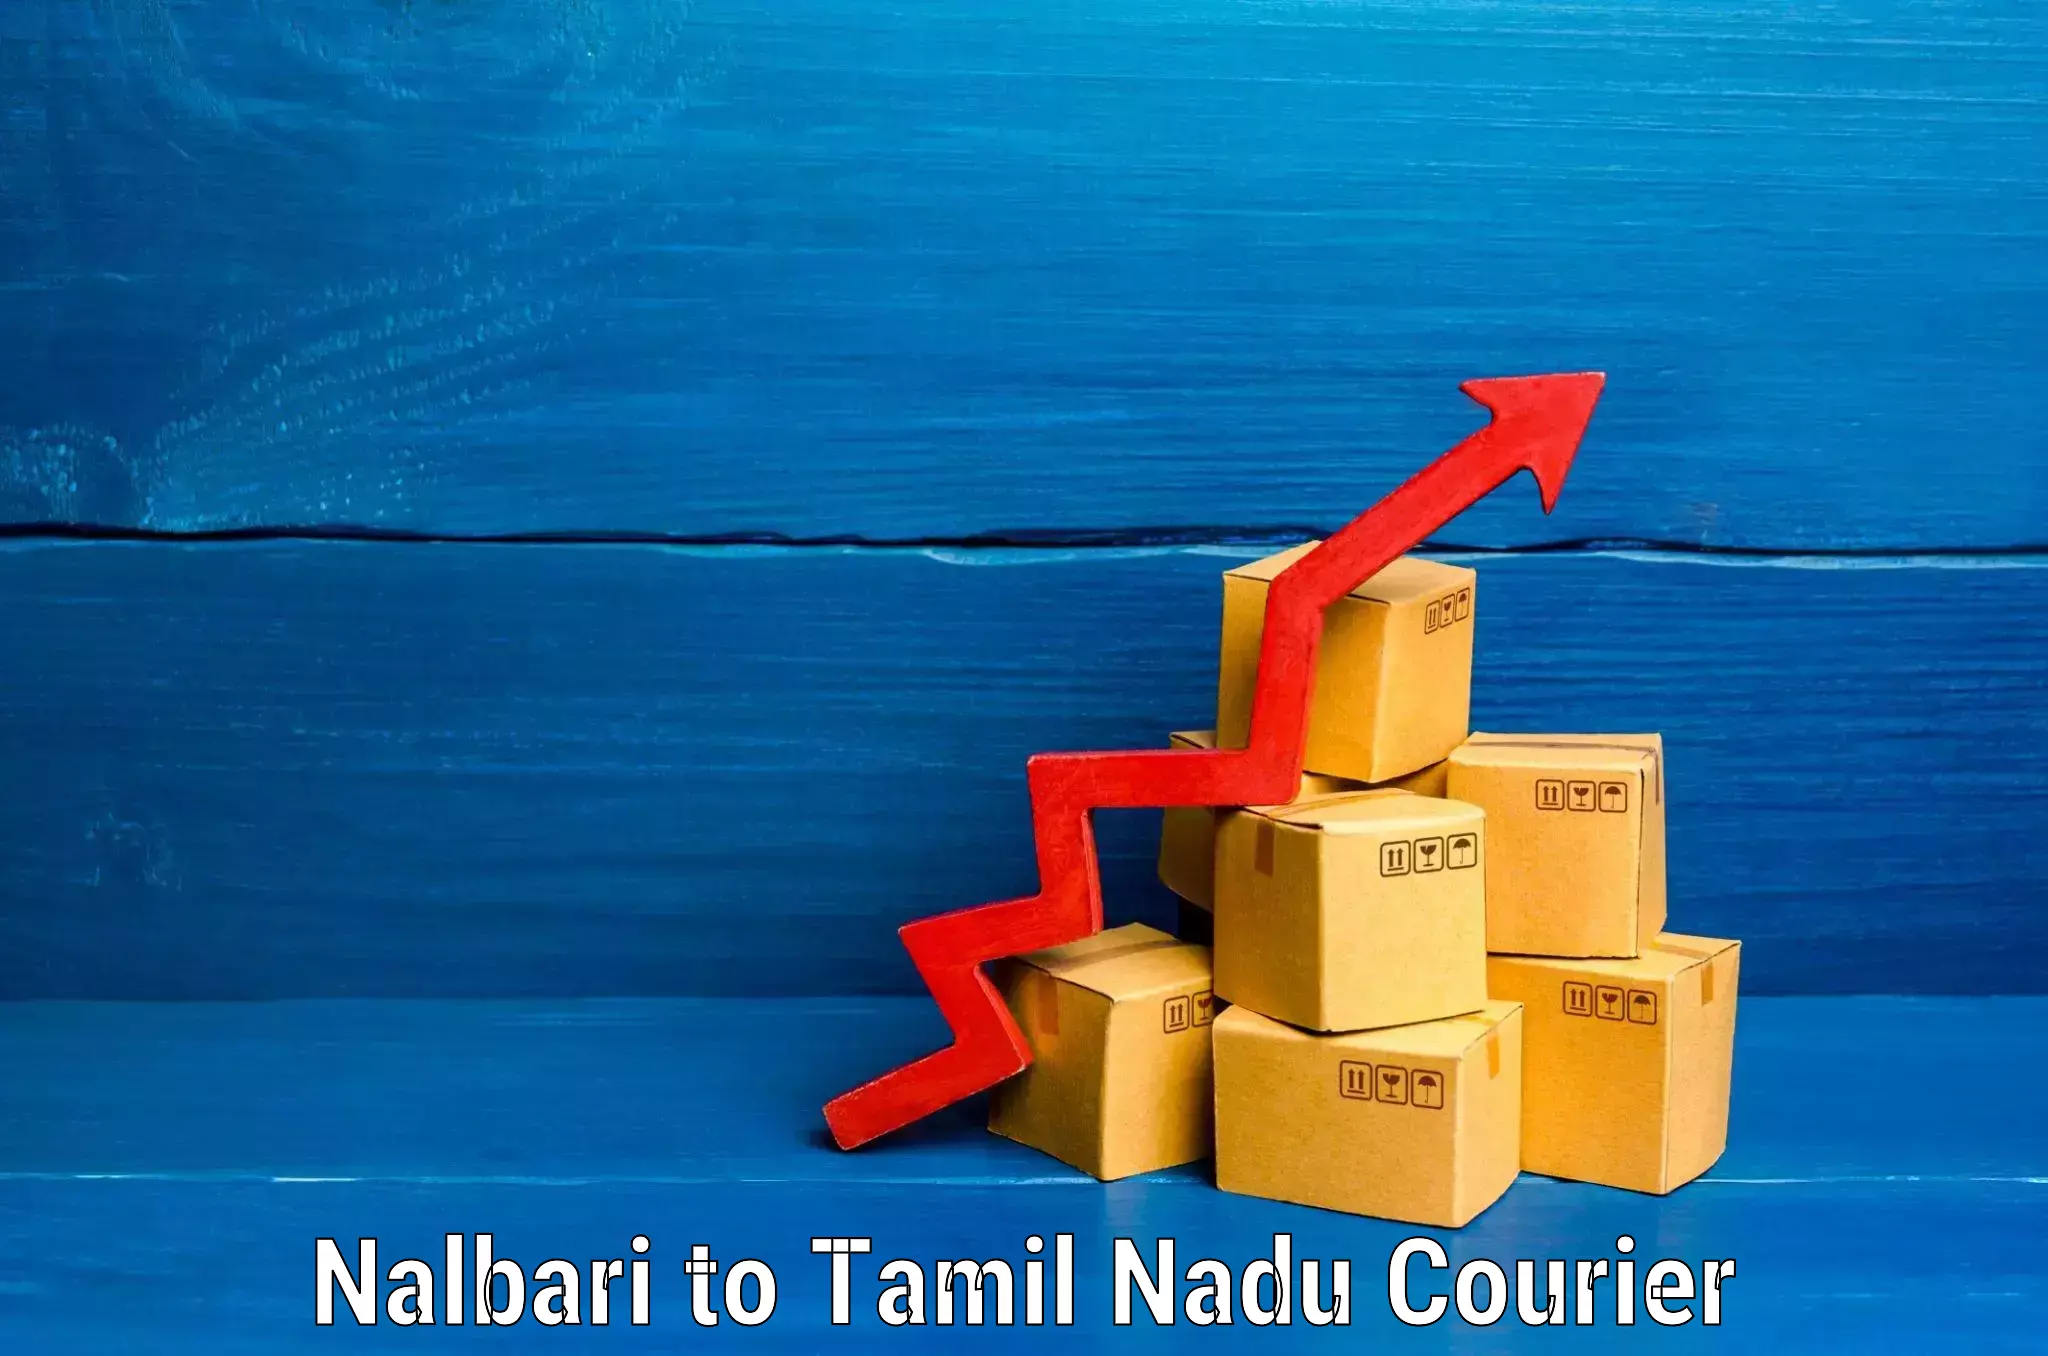 Baggage transport scheduler Nalbari to Tamil Nadu